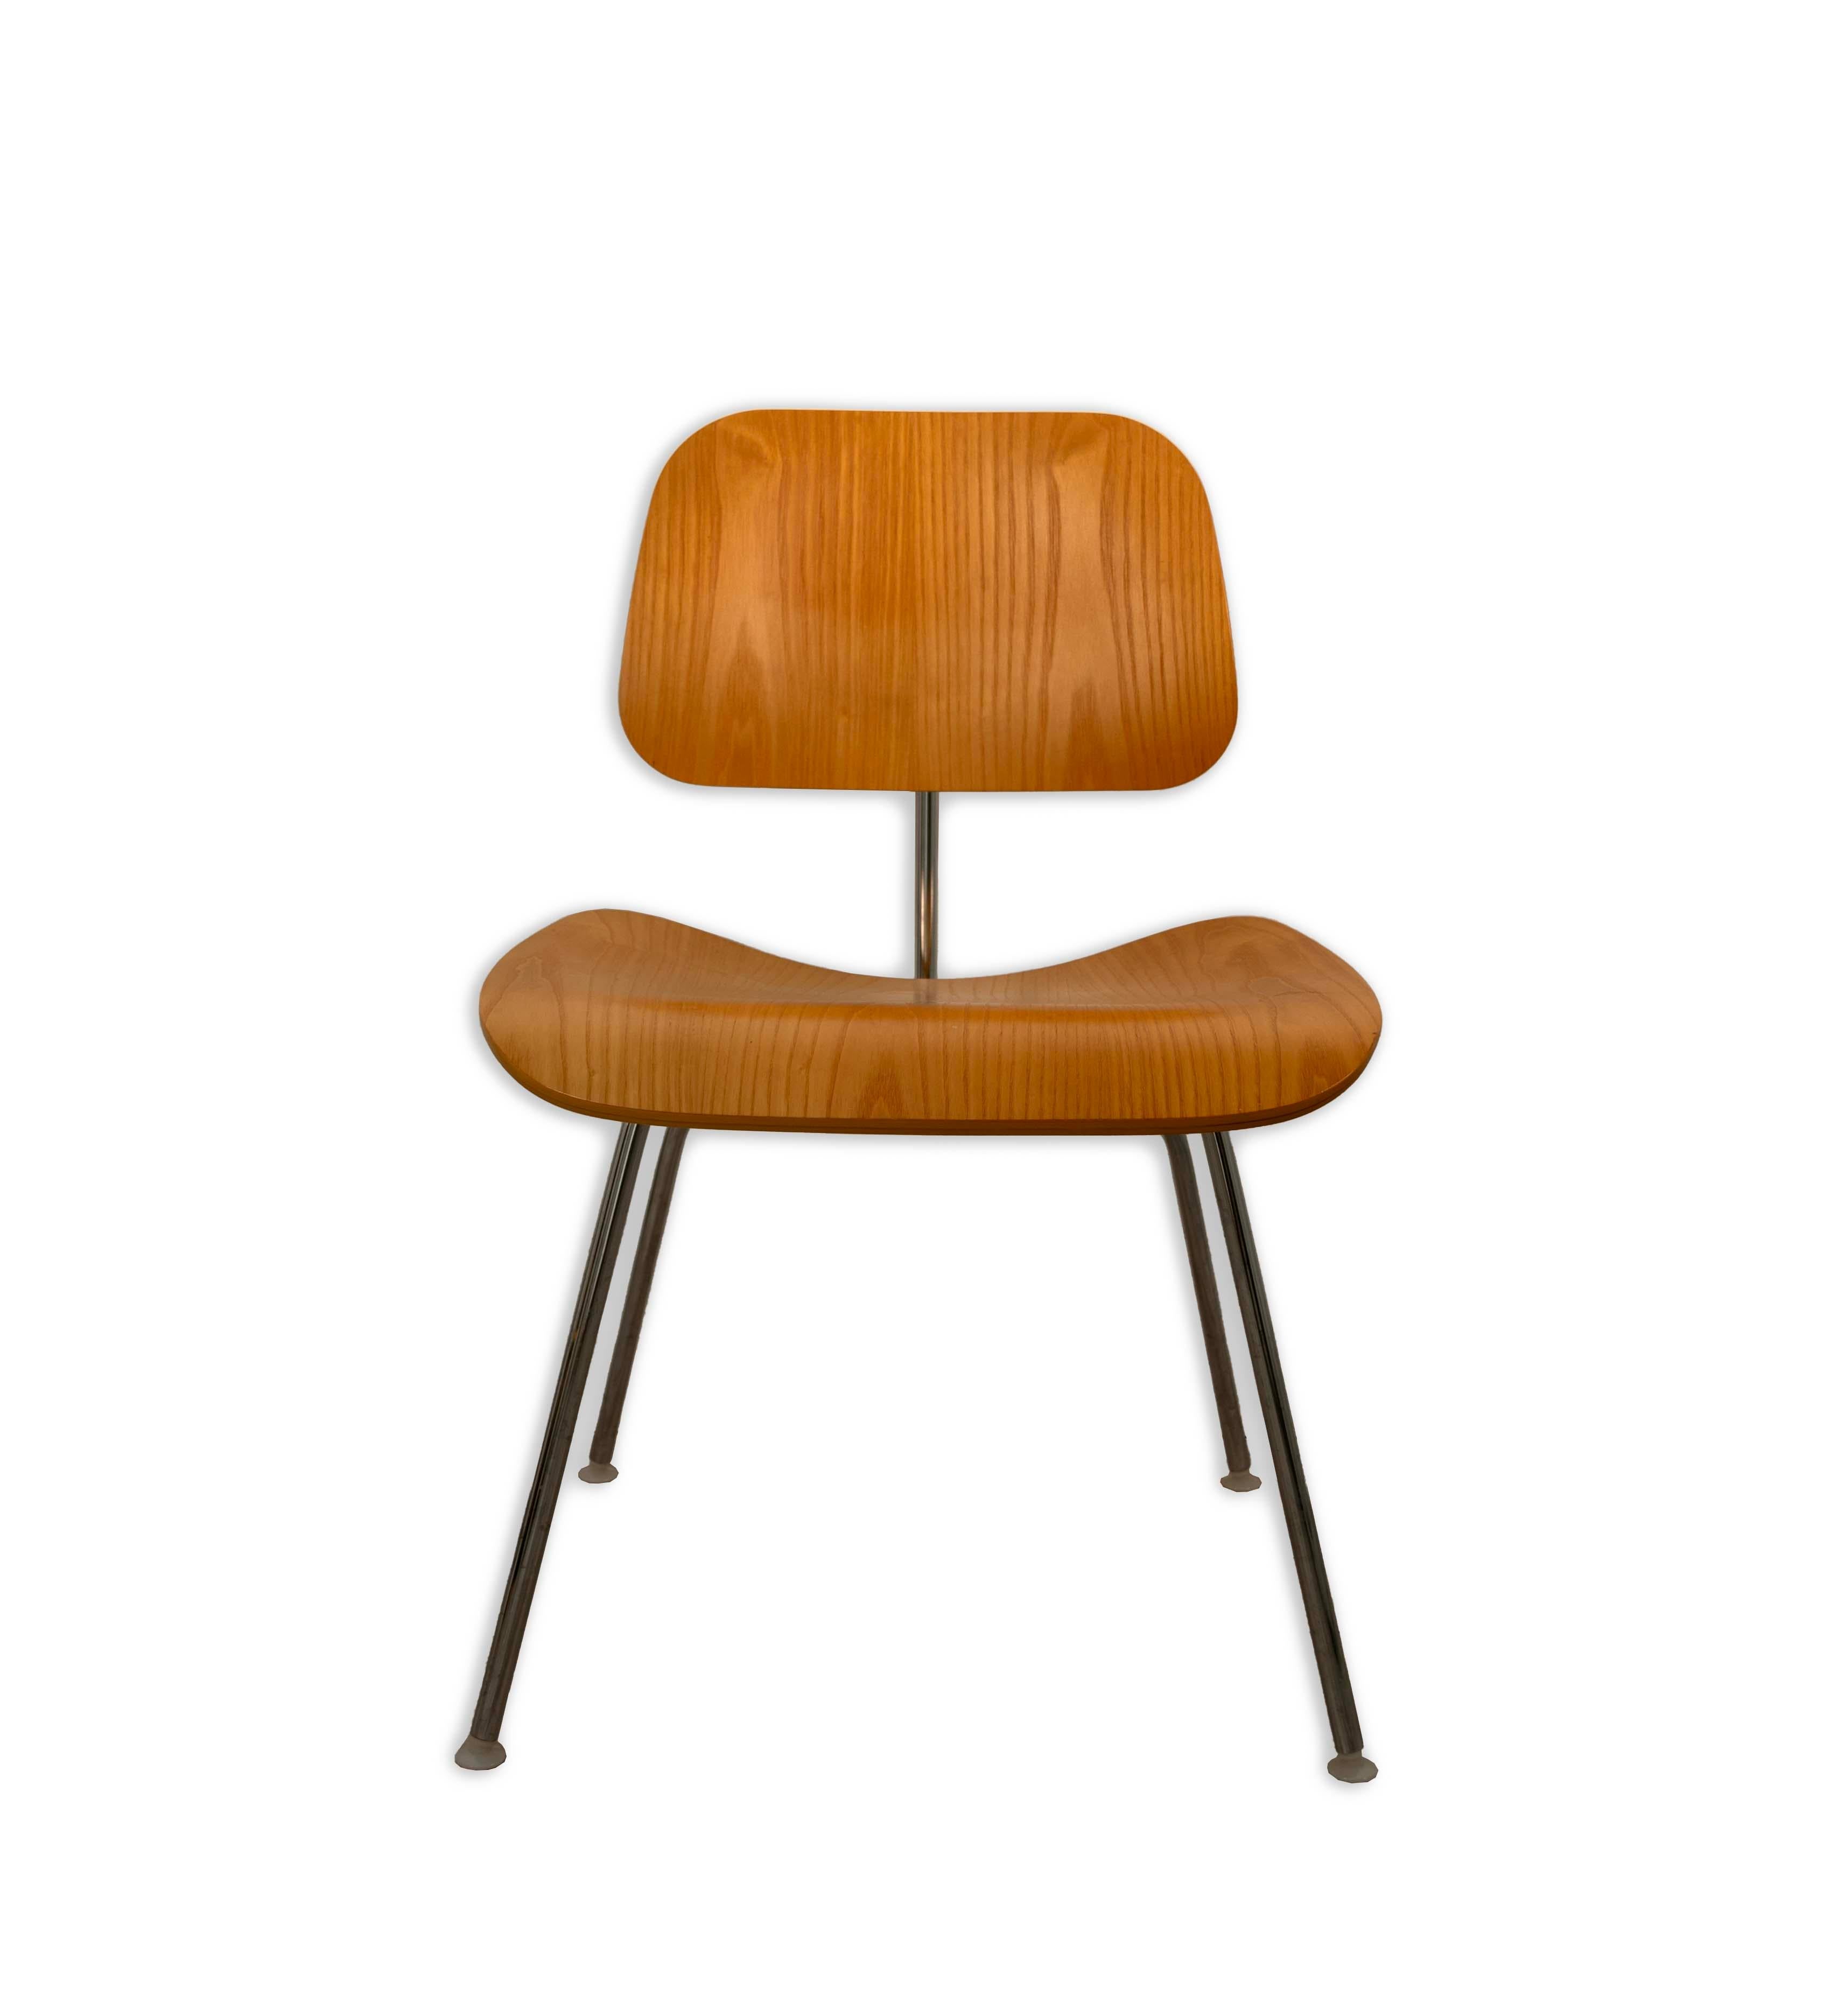  Dieser DCM-Stuhl von Eames für Herman Miller verleiht Ihrem Zuhause oder Ihrem Büro den kultigen Charme des Mid Century Modern. Die charakteristische Konstruktion aus Formsperrholz verbindet natürliche Schönheit mit dem industriellen Glanz des